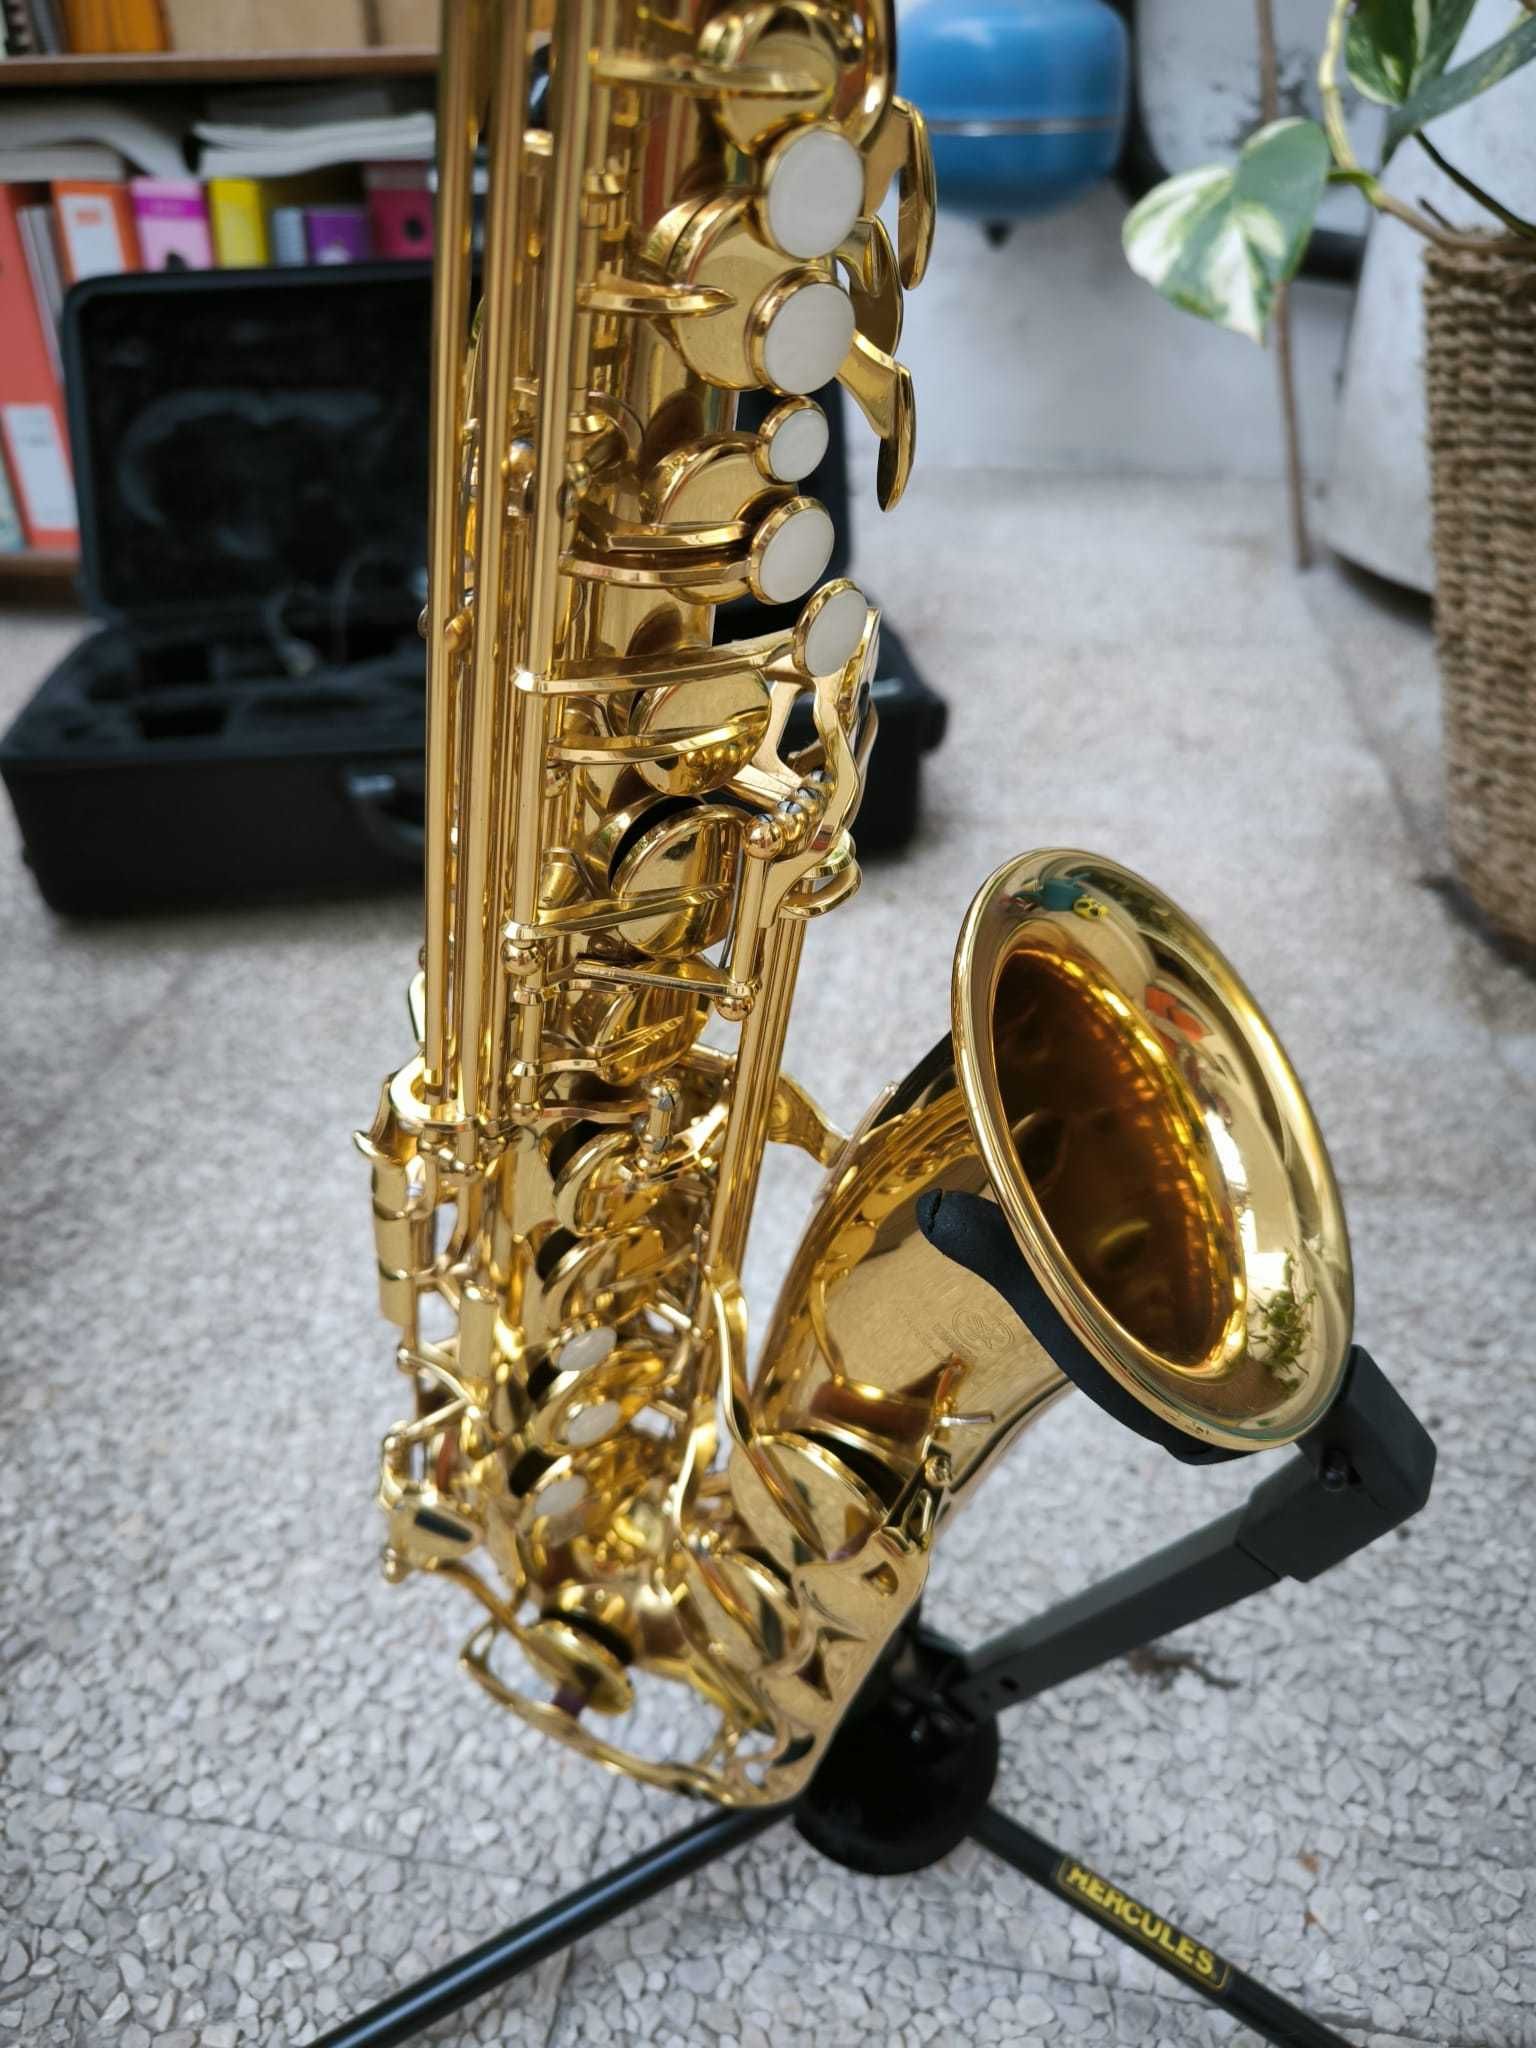 Saxofone Yamaha YAS-280